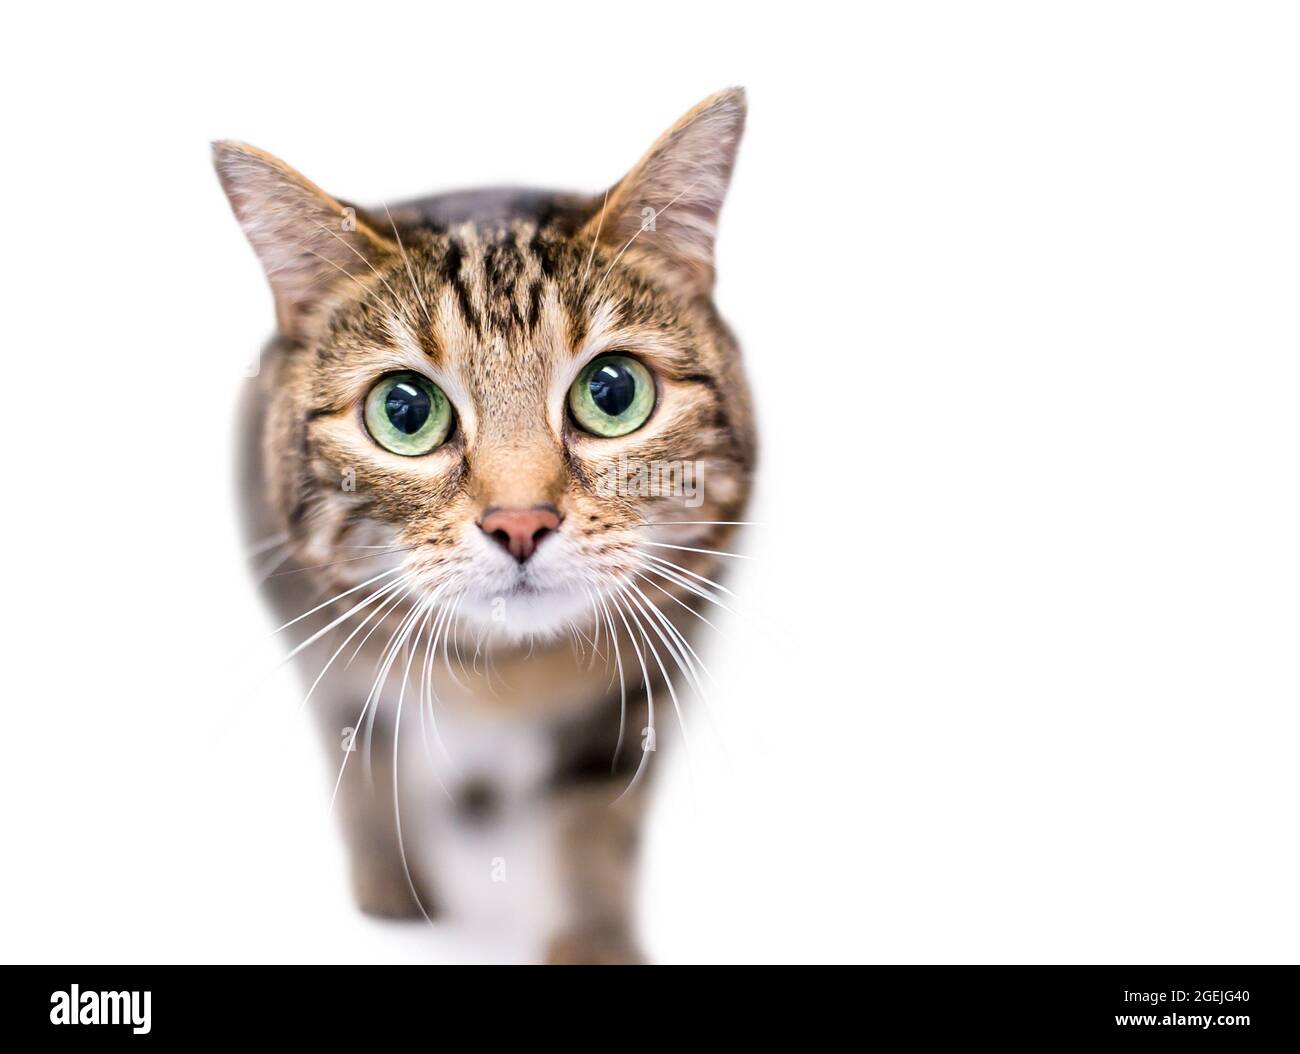 Un joli chat de shorthair tabby avec d'énormes yeux verts et une expression large des yeux Banque D'Images